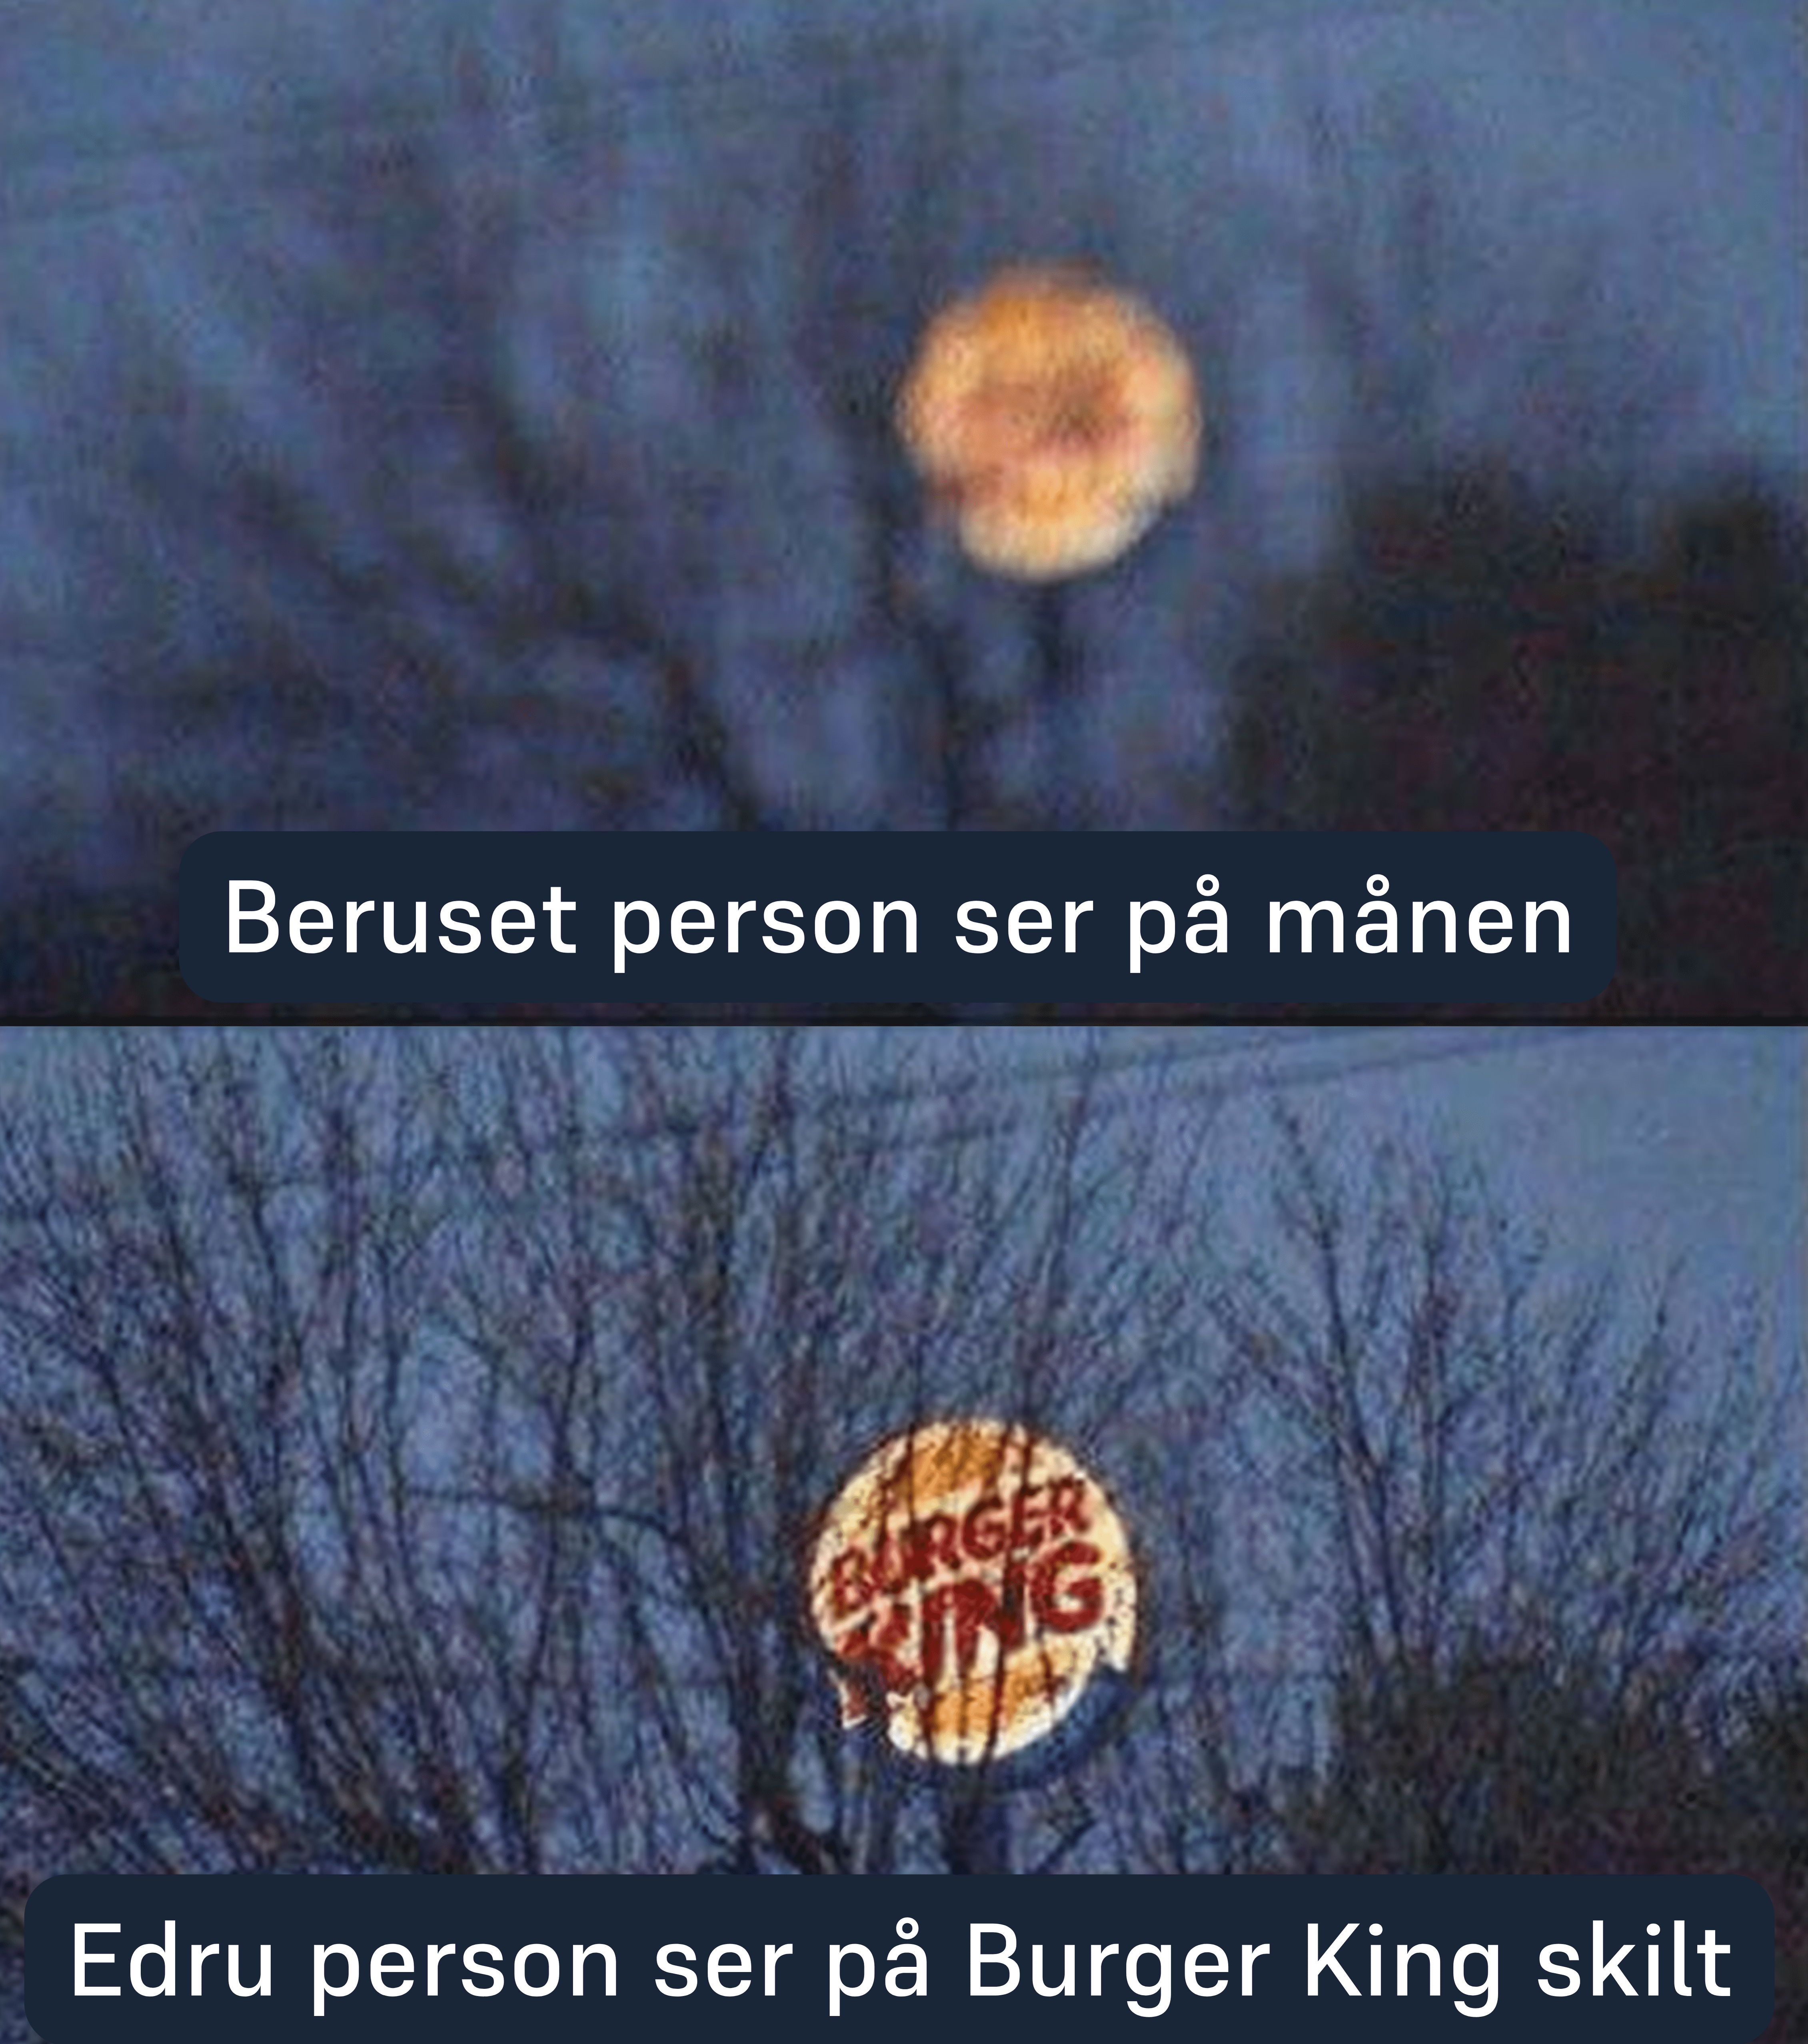 Beruset person ser på månen, mens edru person ser på Burger King skilt.